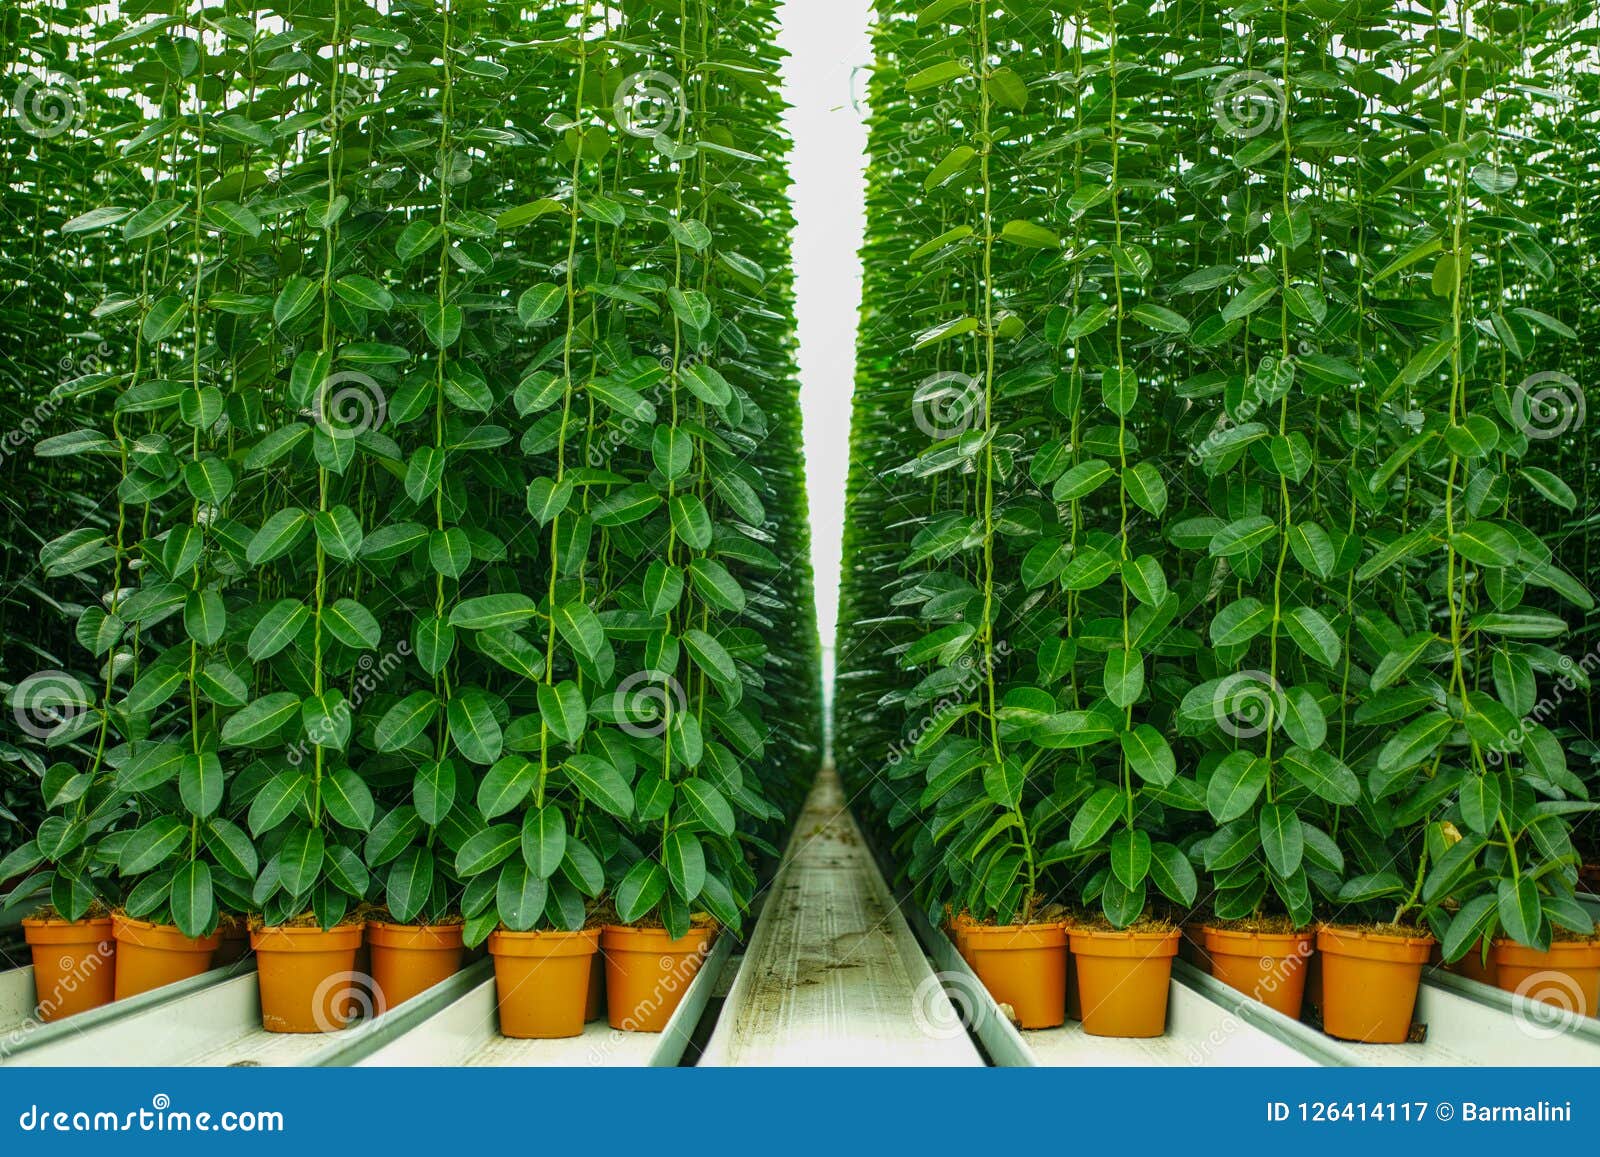 Planta Do Stephanotis Ou Jasmim De Madagáscar, Cultivado Como O Decorativ  Imagem de Stock - Imagem de jardim, interior: 126414117